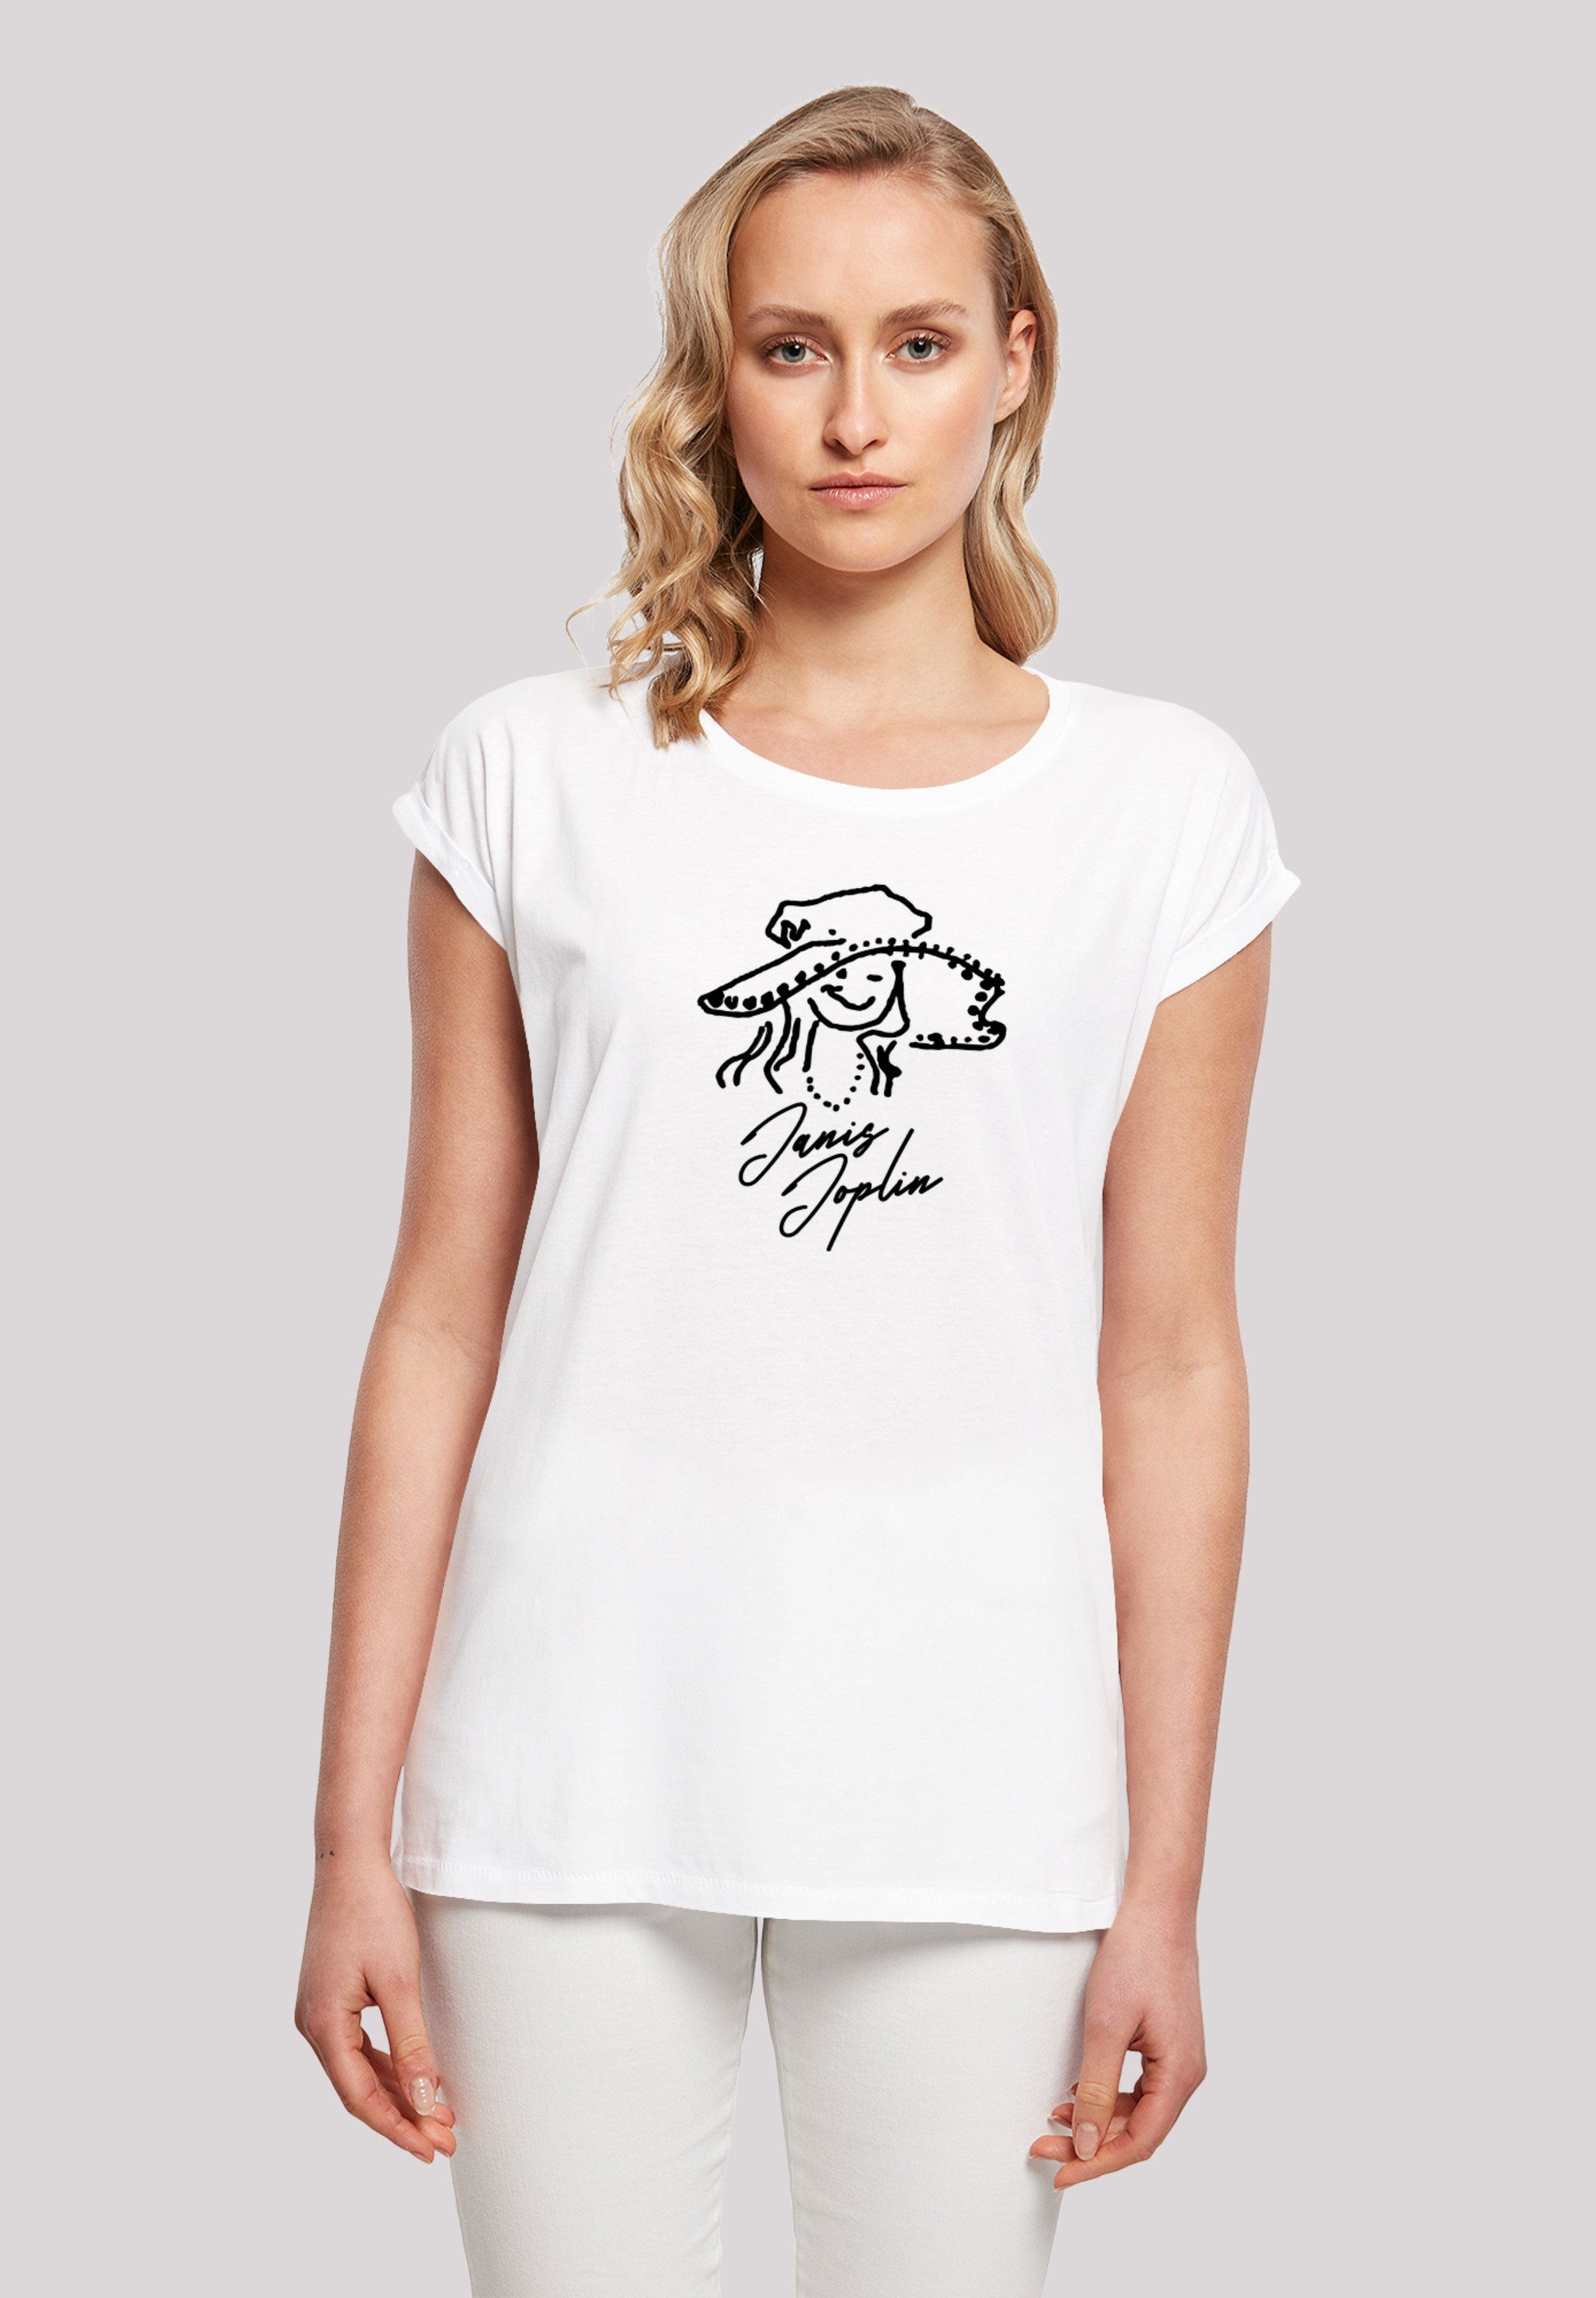 Ärmel,Bandshirt, Joplin T-Shirt Janis F4NT4STIC Damen,Premium Joplin Merch,Regular-Fit,Kurze Sketch Offiziell Janis lizenziertes T-Shirt